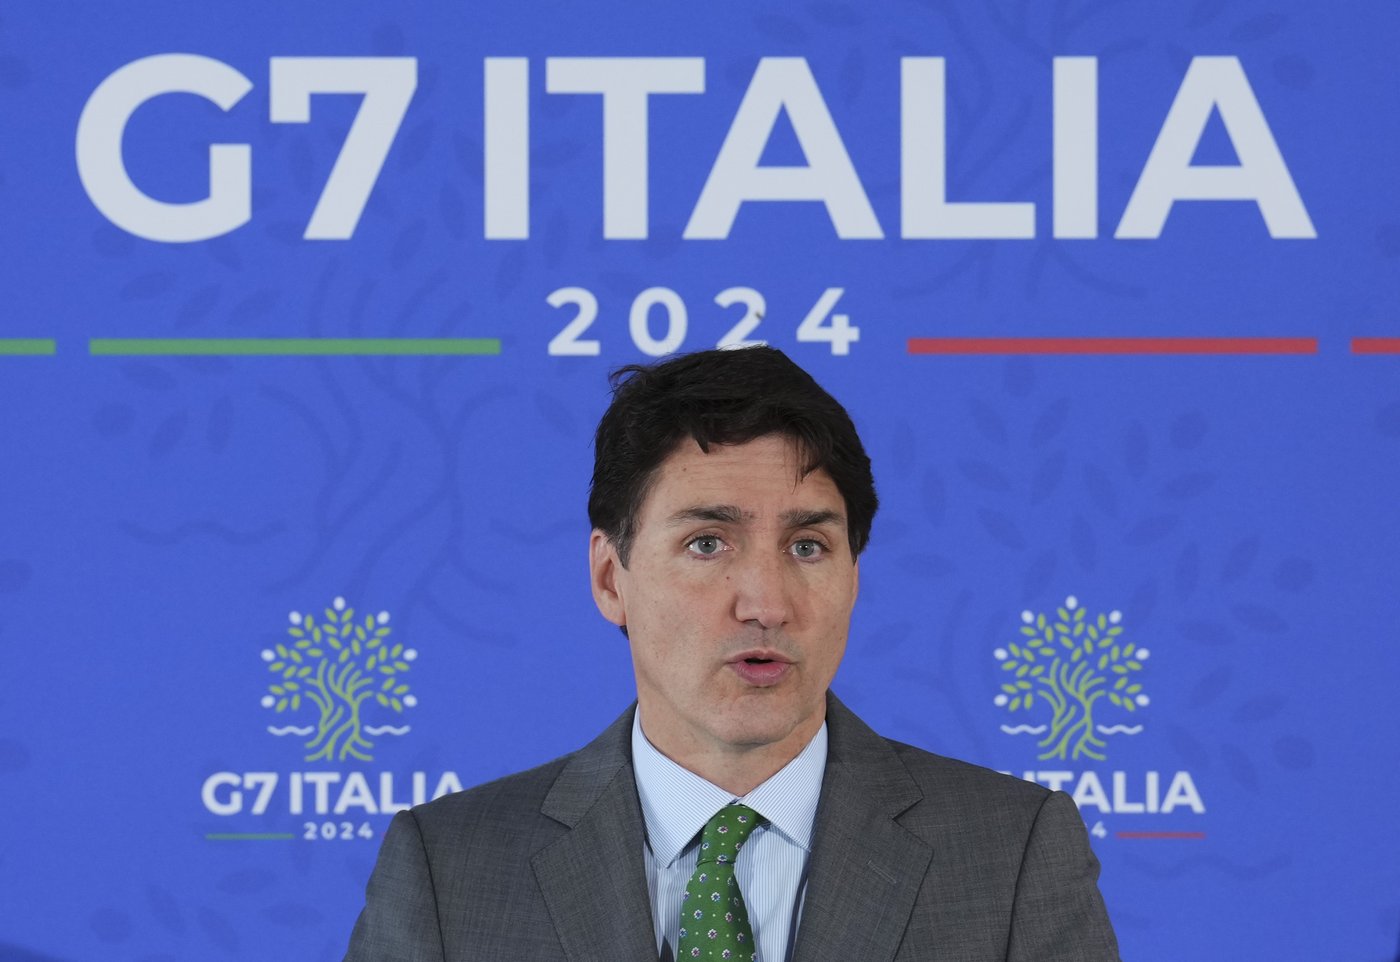 Ingérence: Trudeau refuse de dire si les libéraux figurent parmi les élus suspects